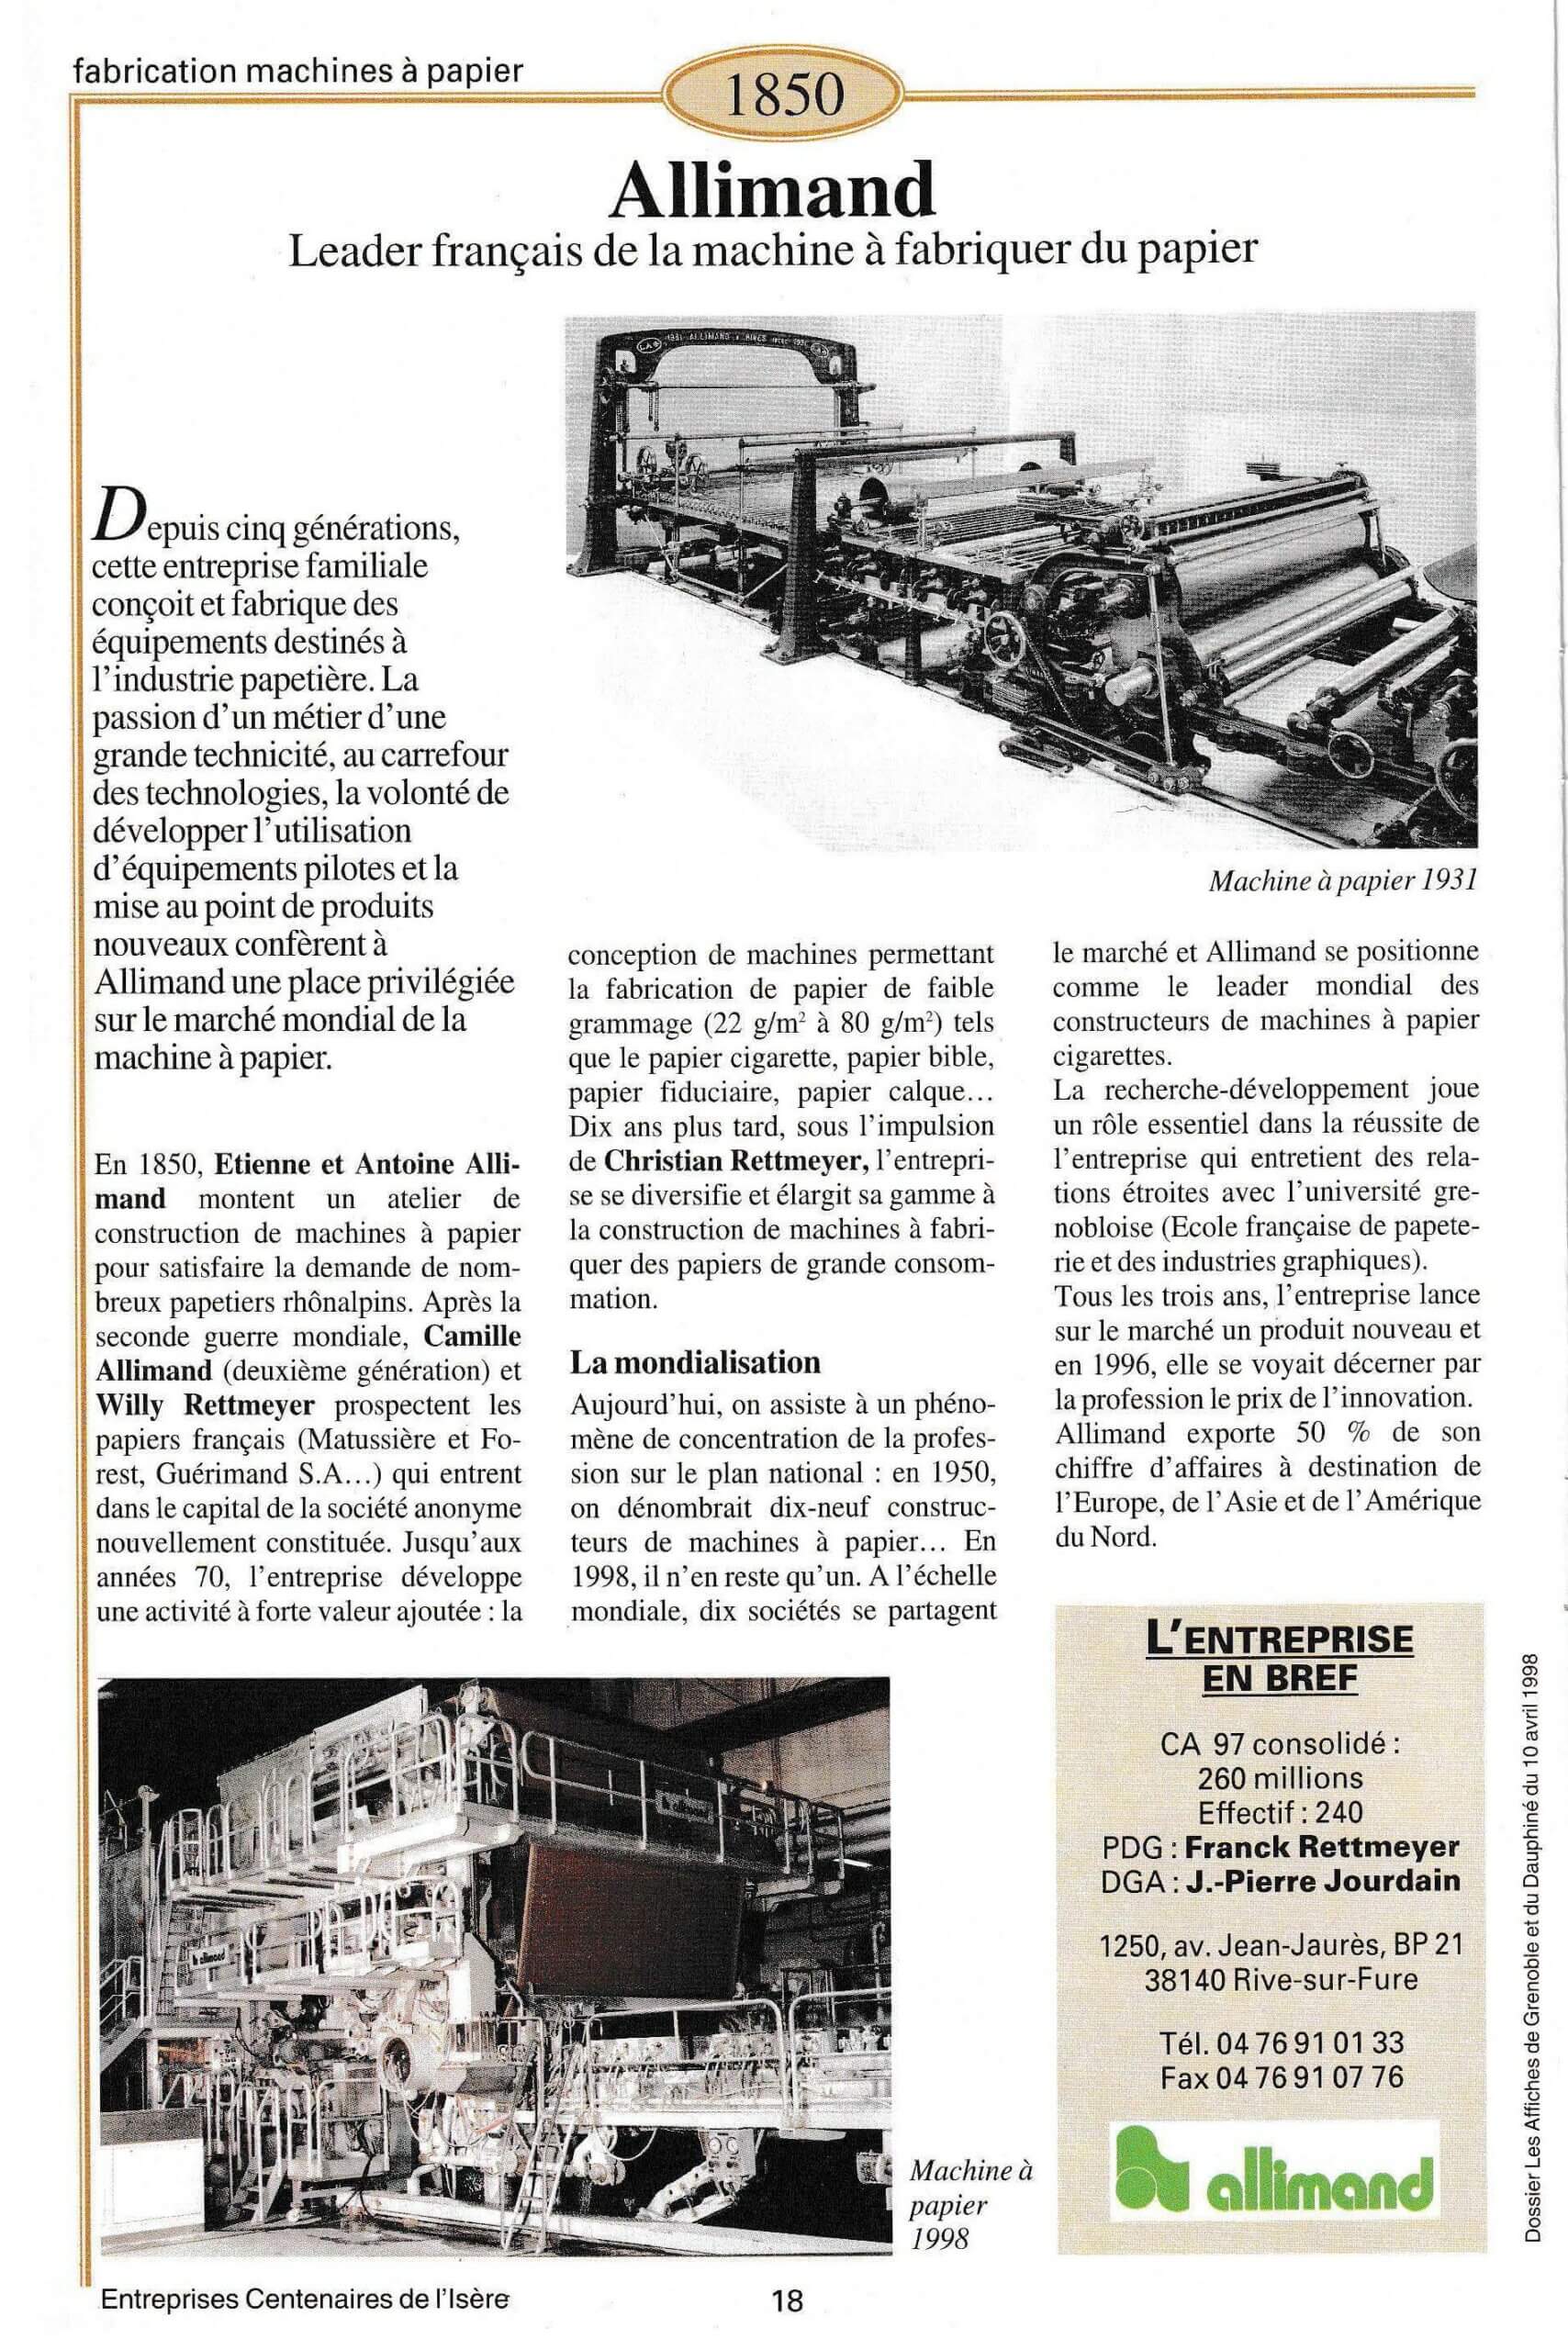 Allimand - fiche du supplément "Entreprises centenaires en Isère", publié par Les affiches de Grenoble et du Dauphiné, juin 1998.